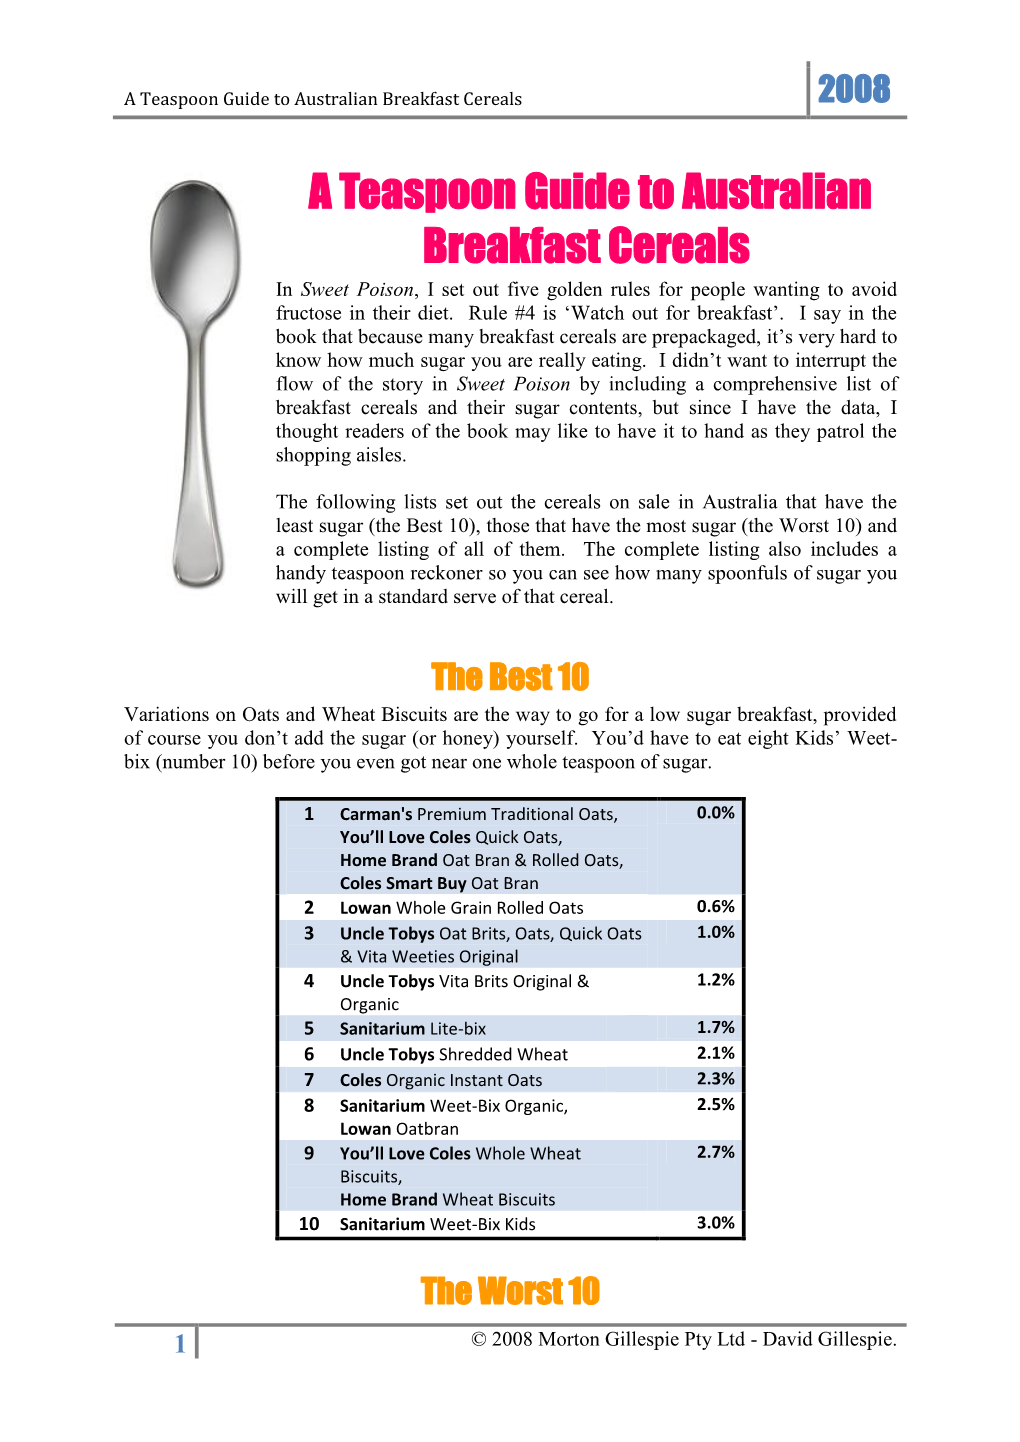 A Teaspoon Guide to Australian Breakfast Cereals 2008